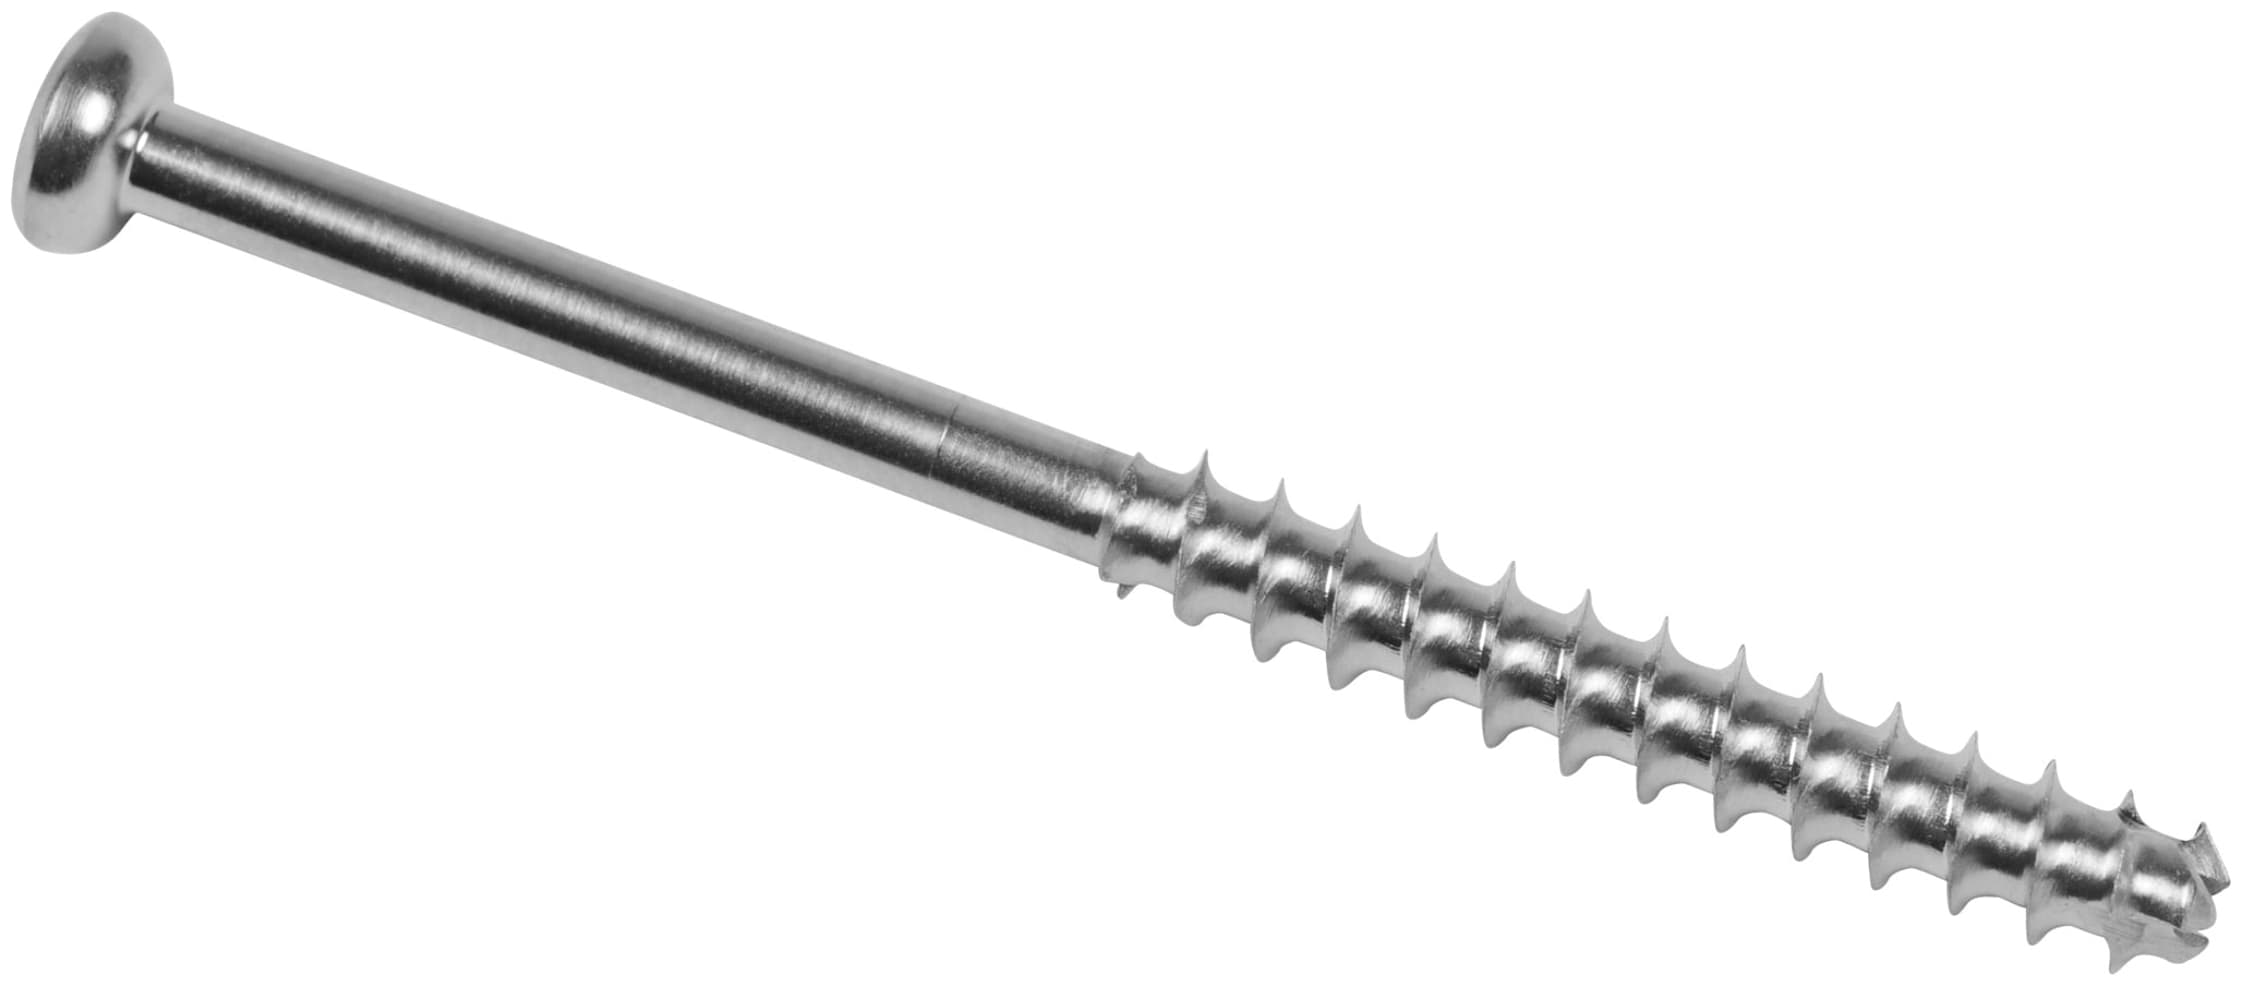 Low Profile Schraube, Stahl, kanüliert, langes Gewinde, 4.0 x 50 mm, unsteril, IM